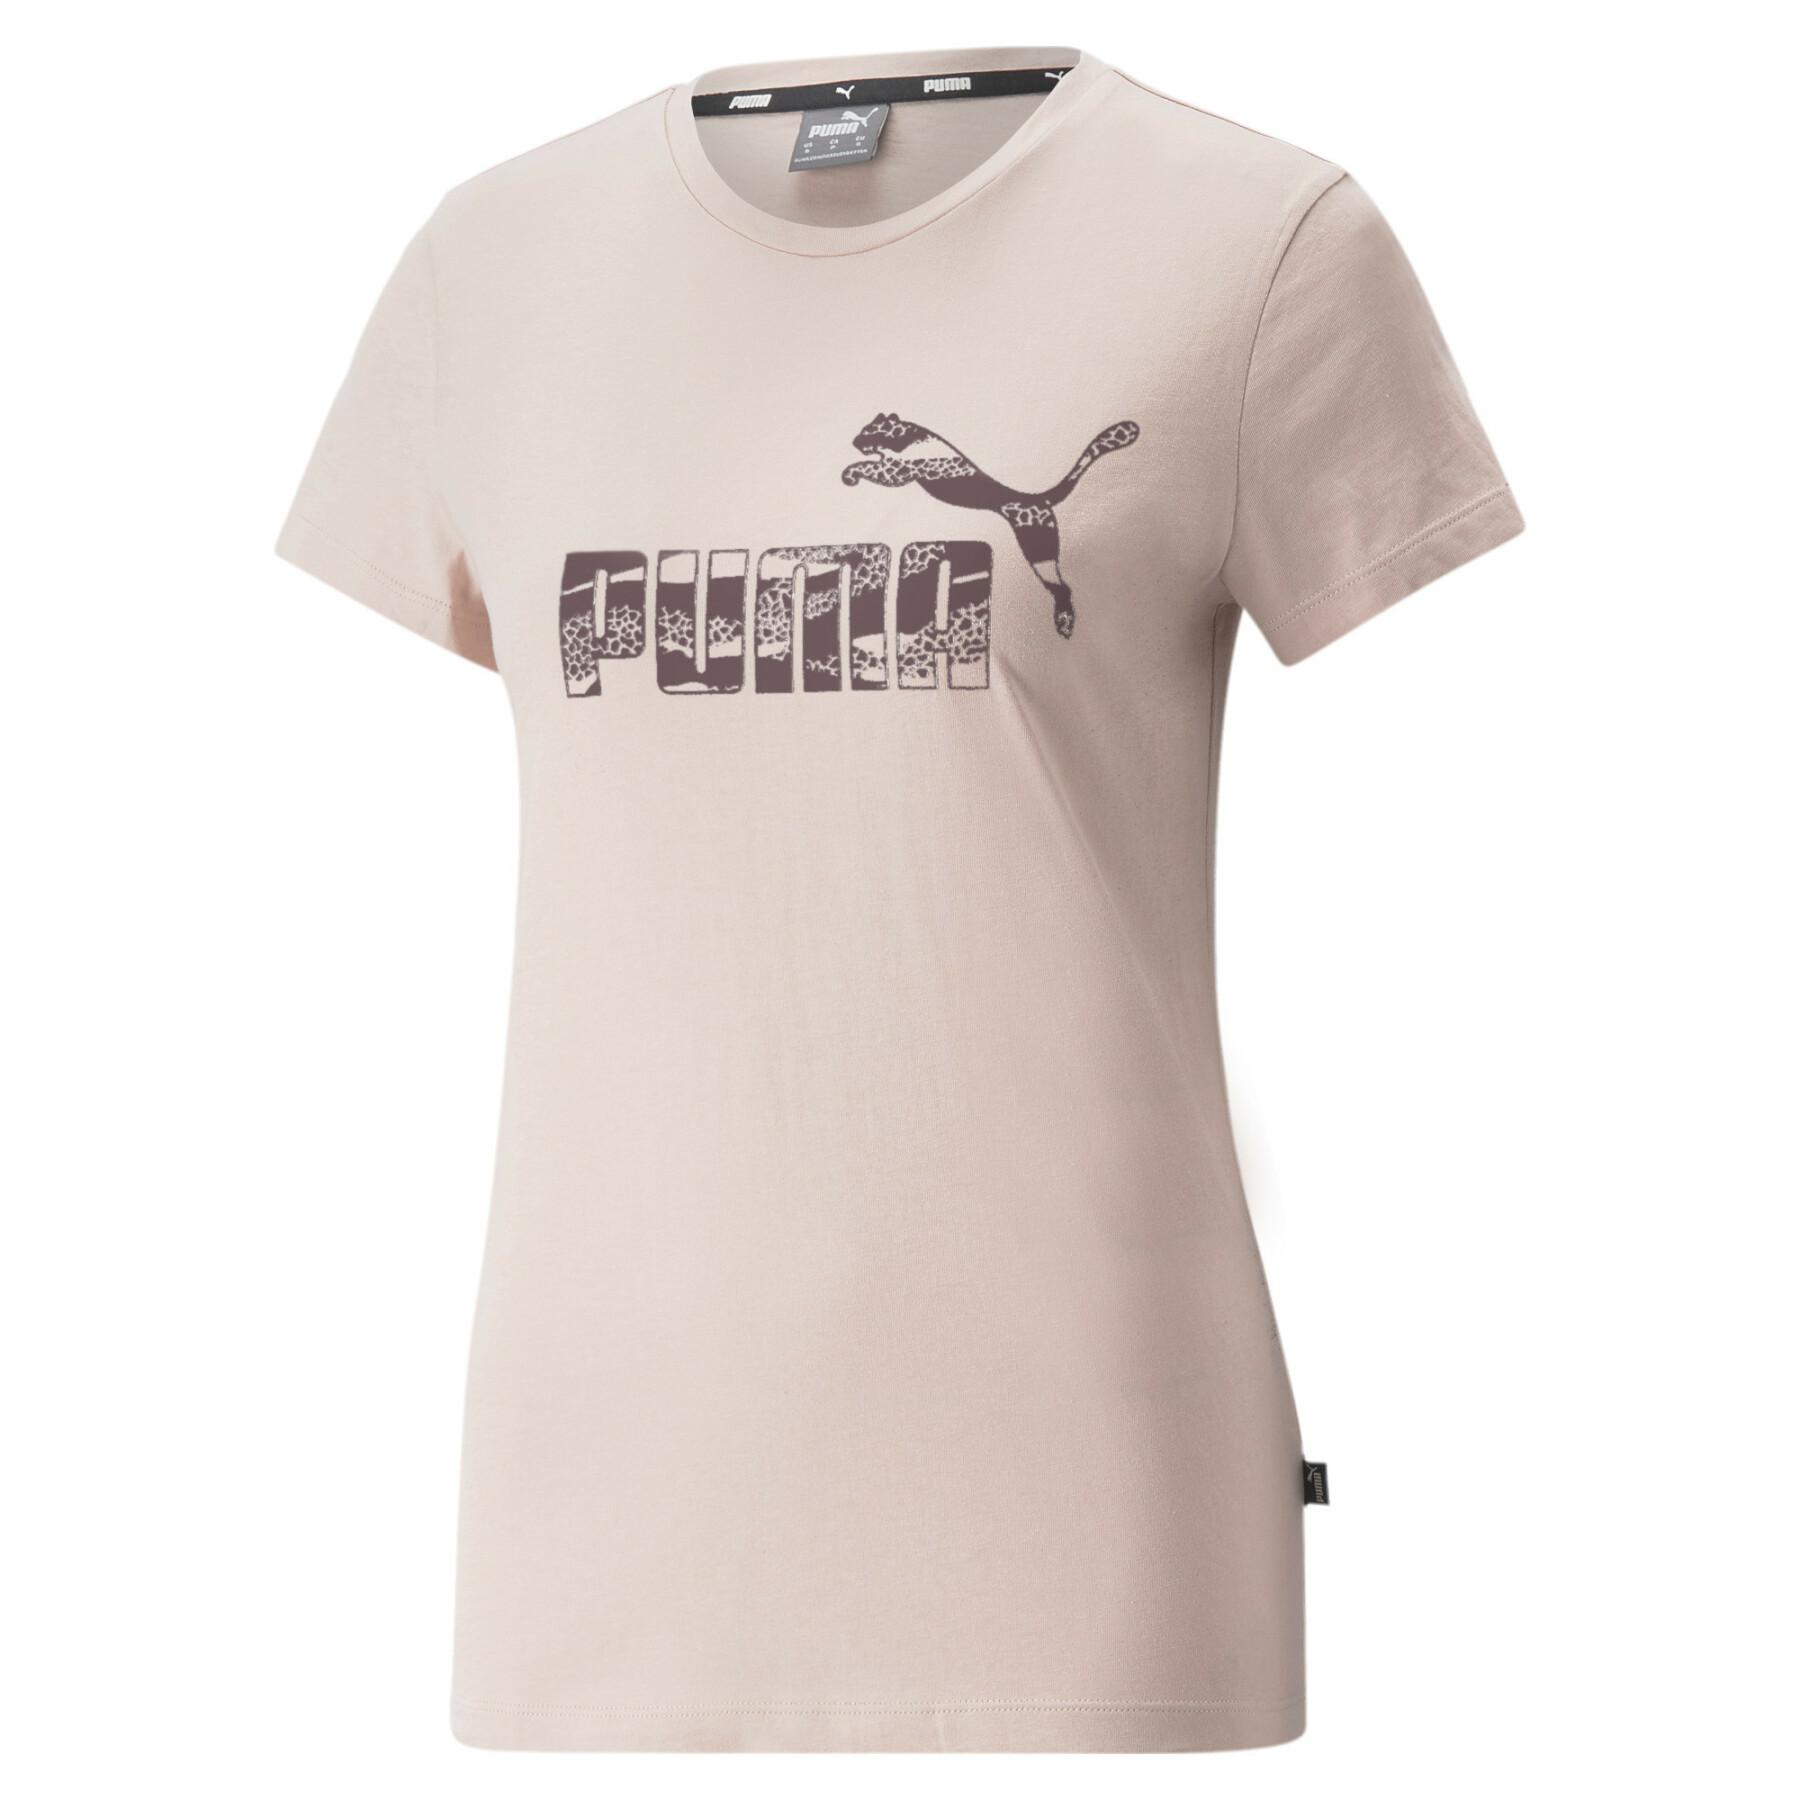 Lifestyle Animal woman Woman T-shirt - T-shirts Puma - ESS+ Lifestyle -